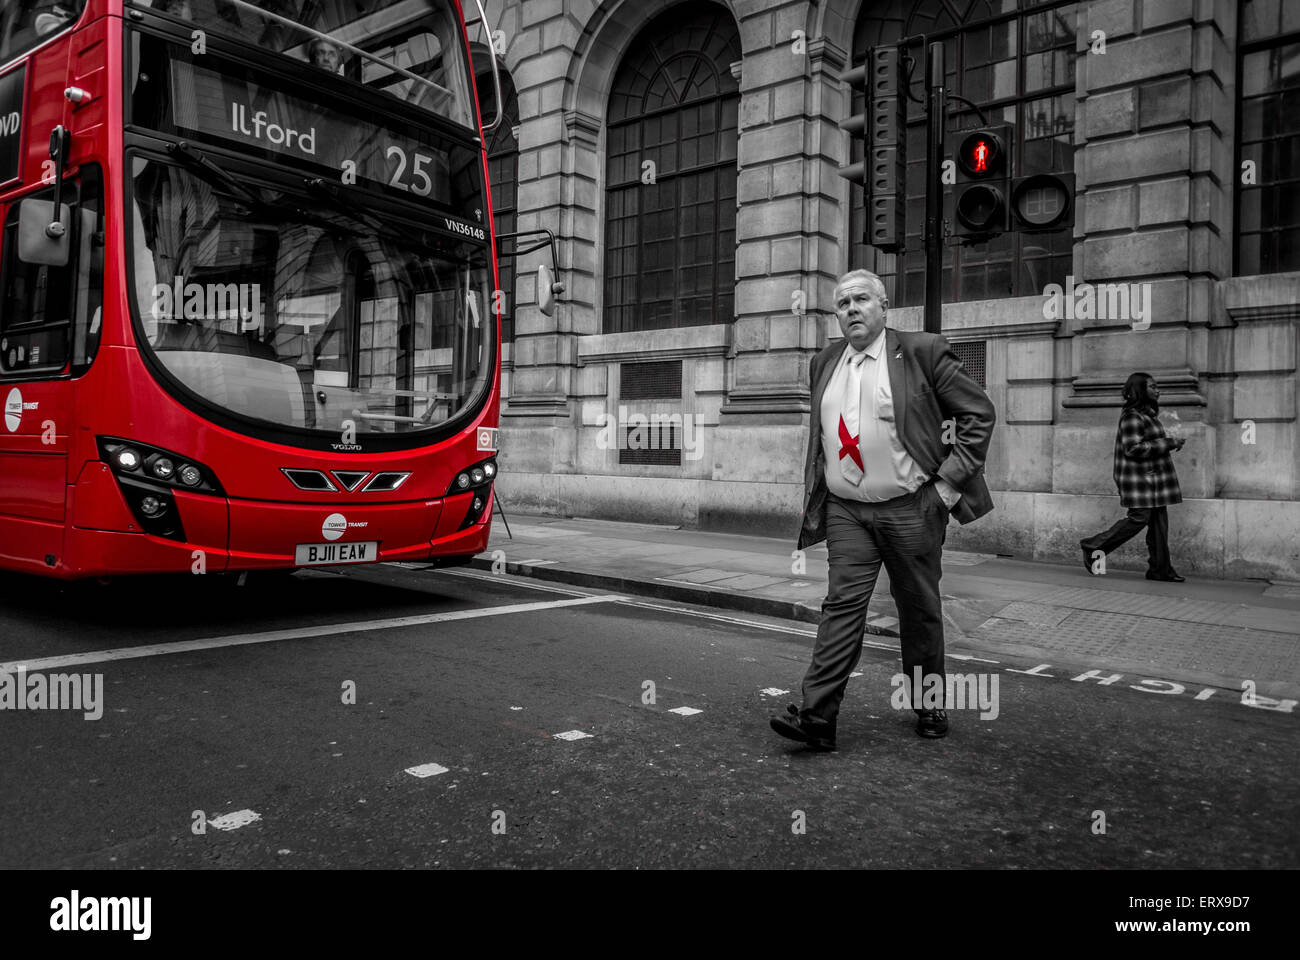 Geschäftsmann mit englischer Flagge Krawatte Kreuzung Straße vor roten Doppeldecker-Bus, London, UK. Stockfoto